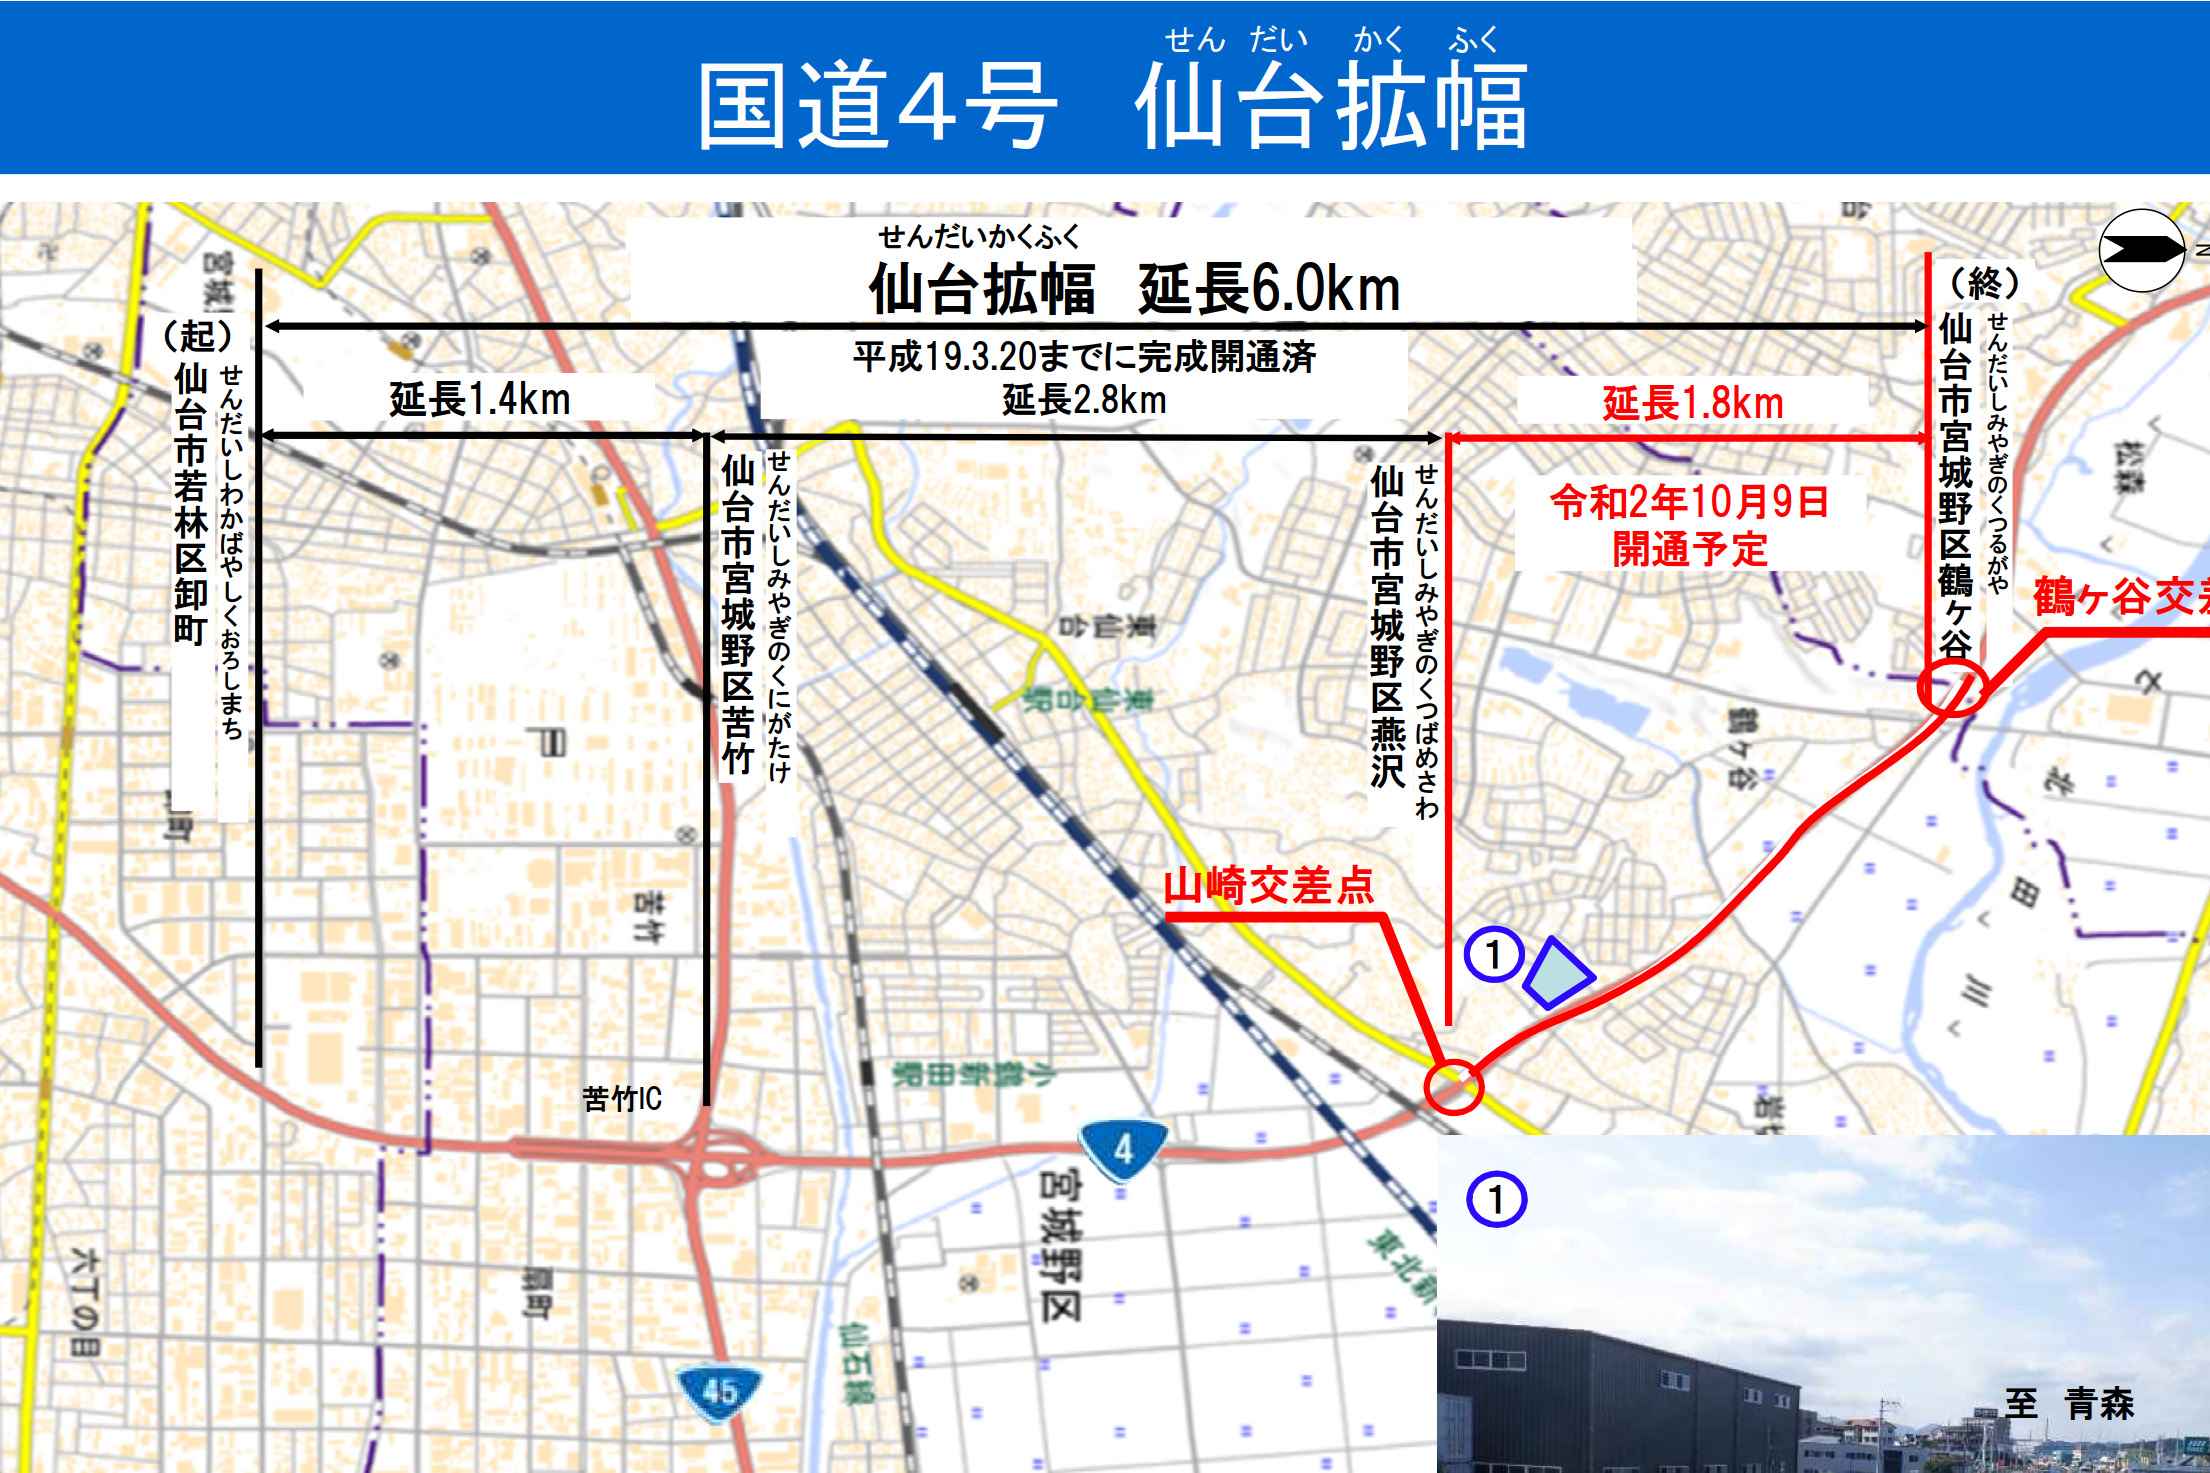 国道4号 仙台バイパスの1.8kmが10月9日に6車線化。残り区間の立体化も今年度着手